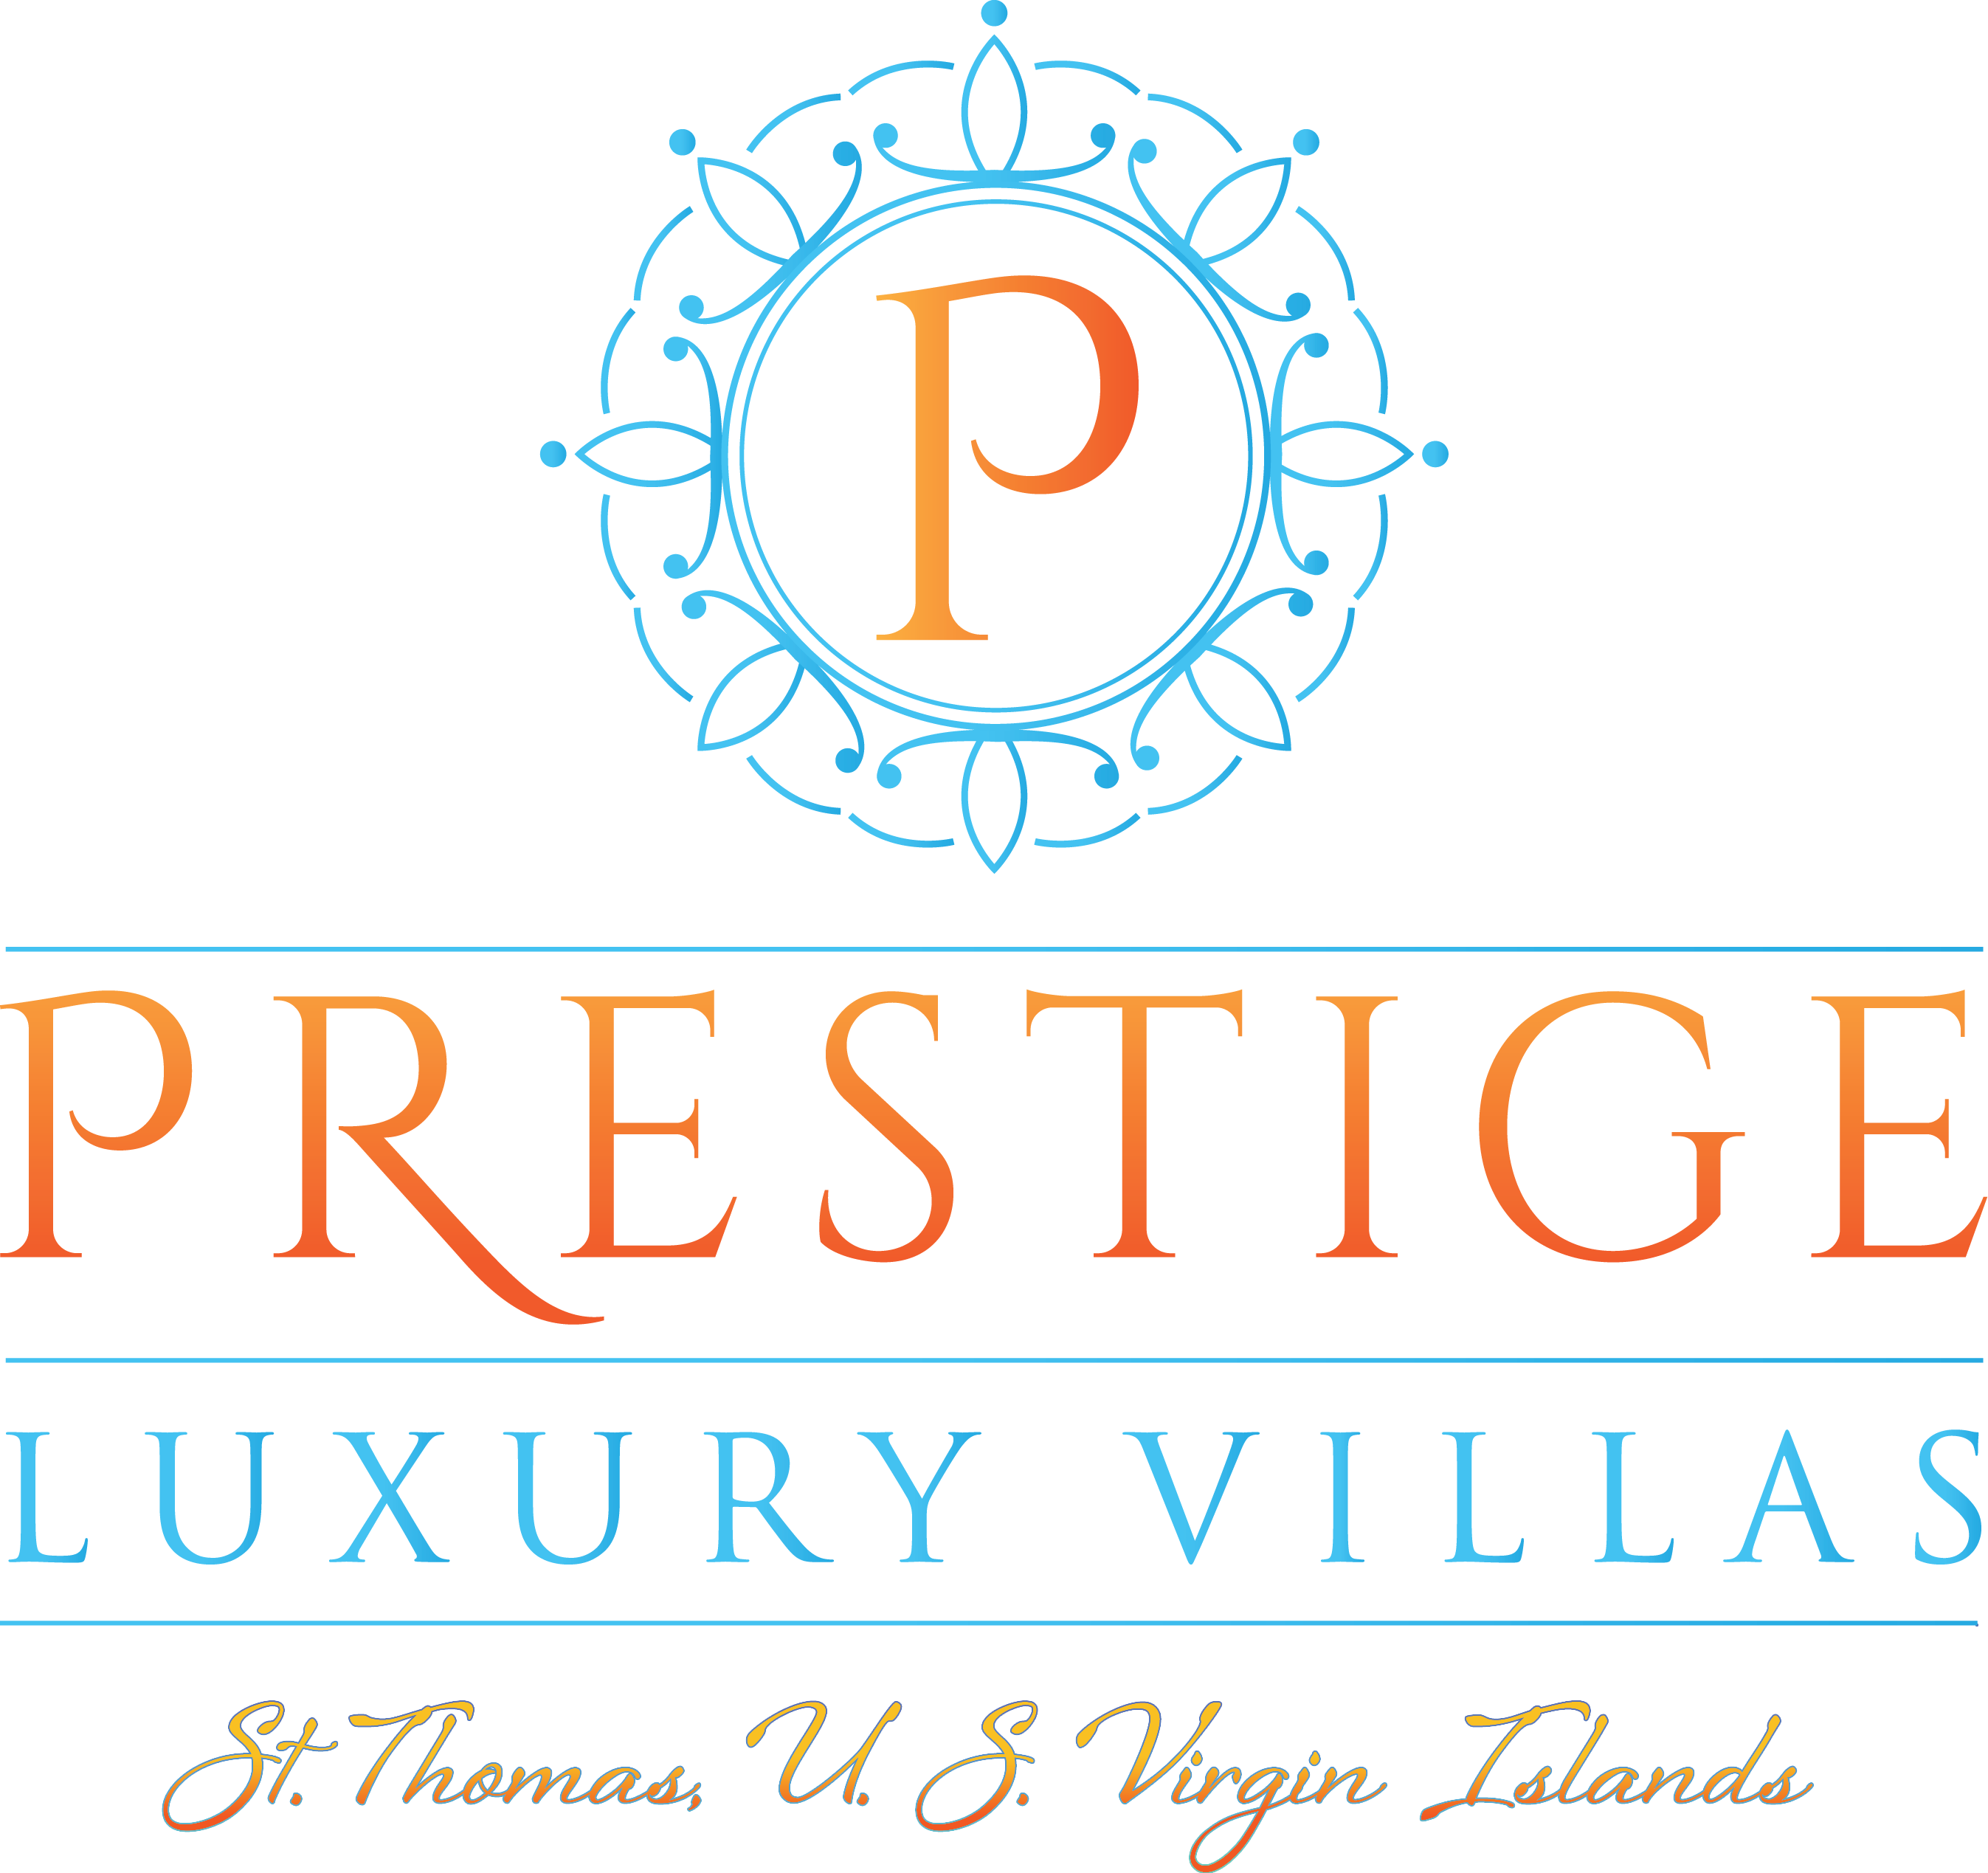 Prestige Luxury Villas